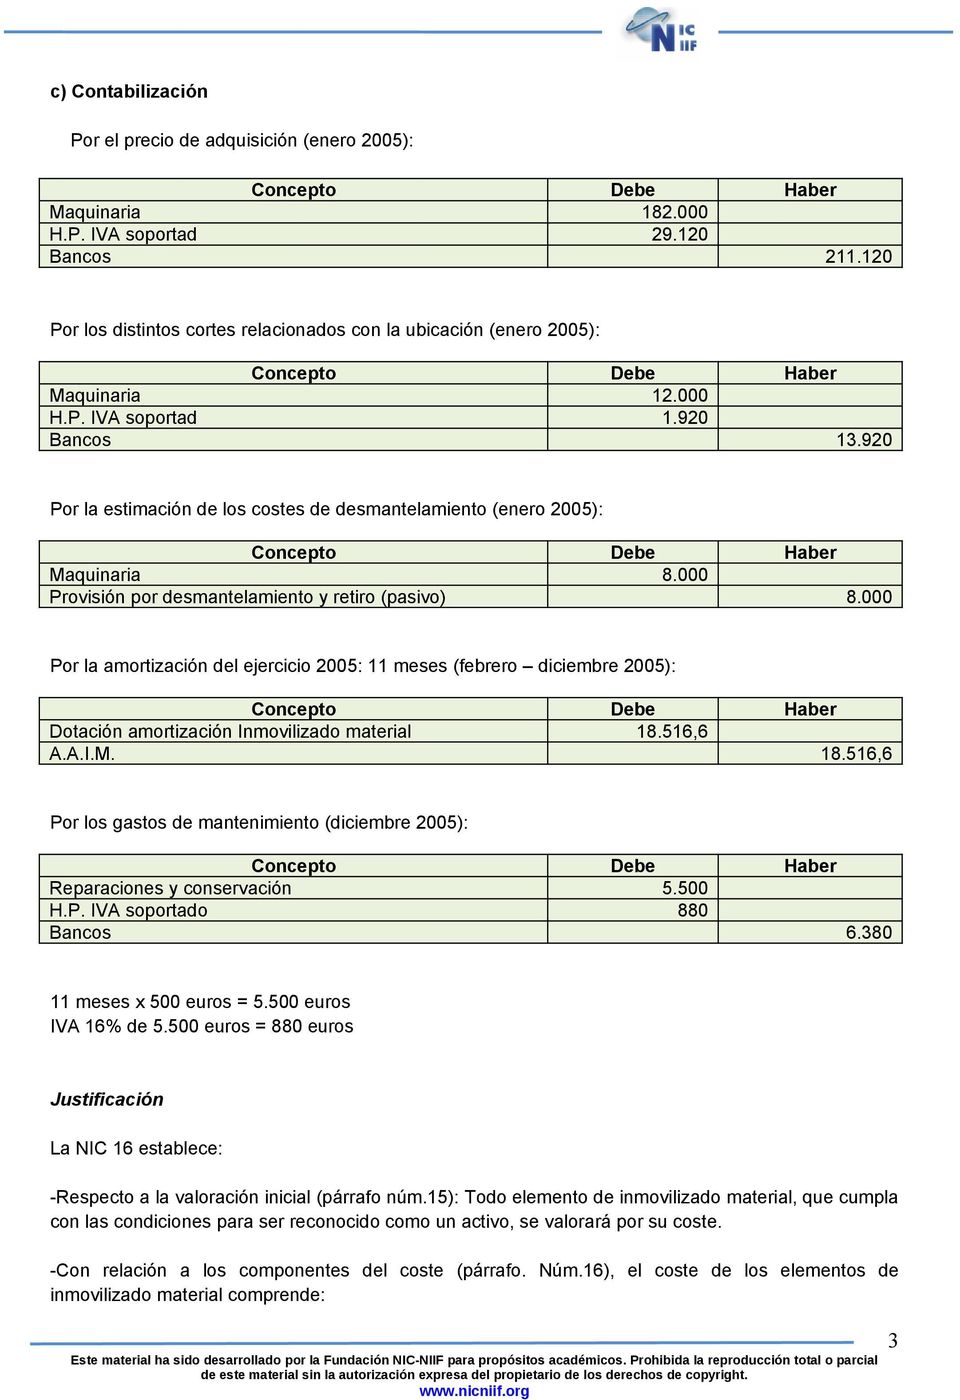 920 Por la estimación de los costes de desmantelamiento (enero 2005): Maquinaria 8.000 Provisión por desmantelamiento y retiro (pasivo) 8.